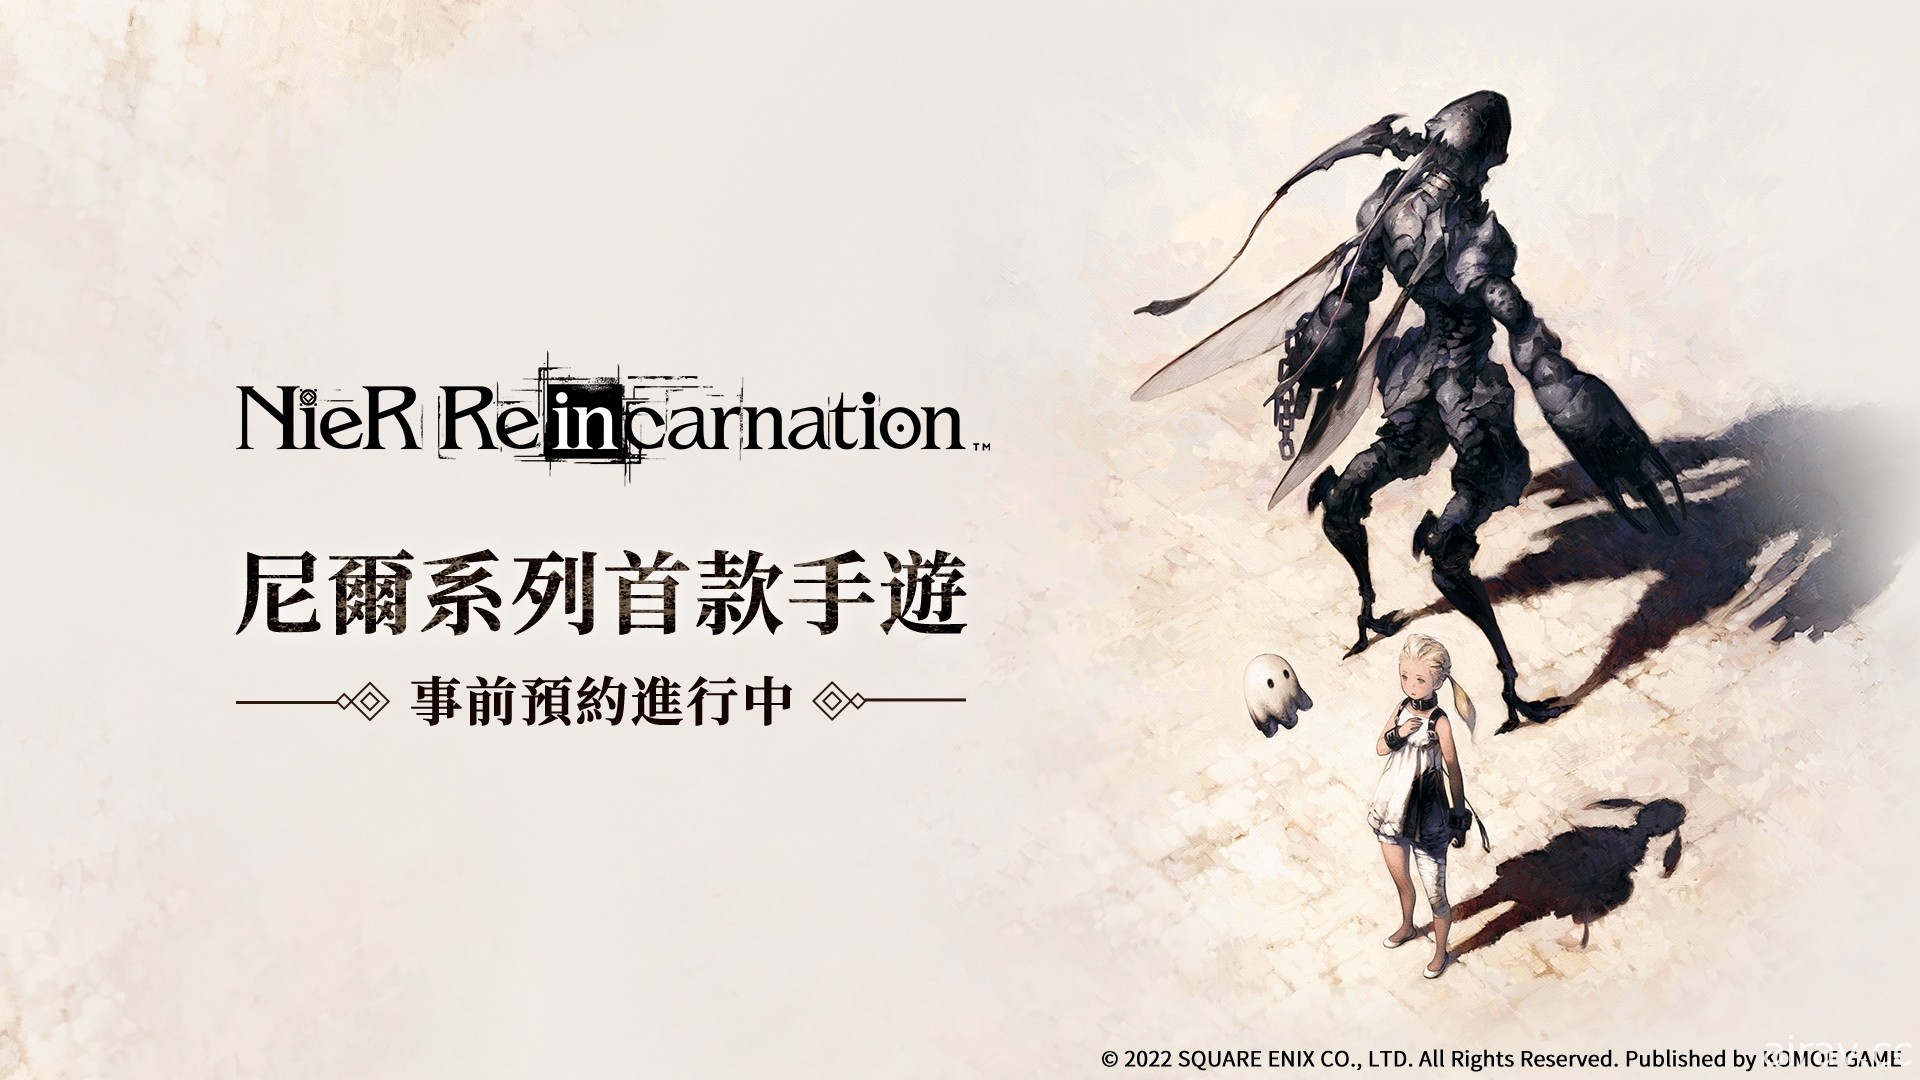 《尼尔》系列手机游戏《NieR Re[in]carnation》繁中版确定推出 即日起展开事前预约